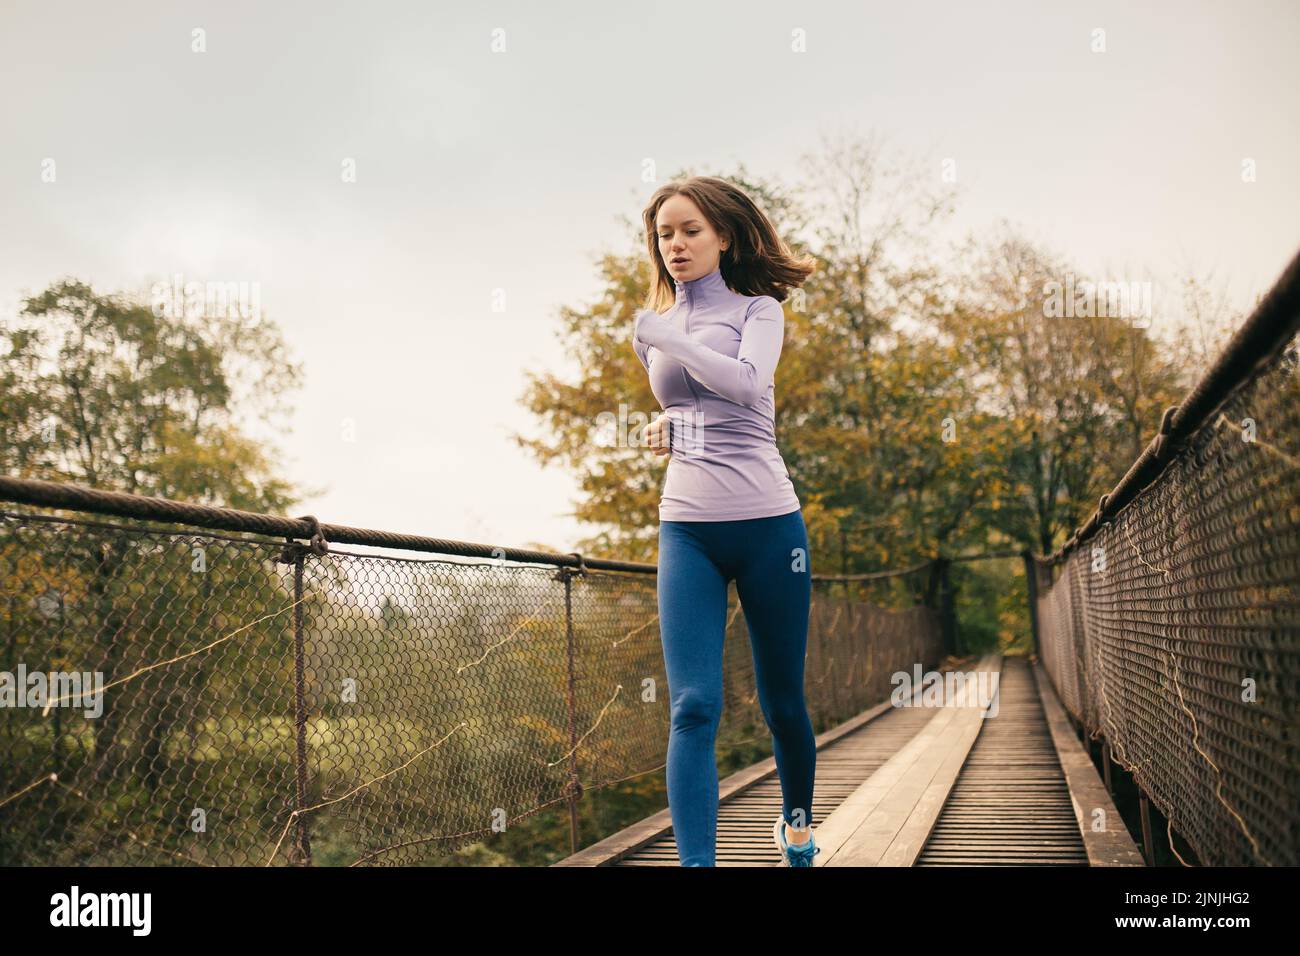 Ein gesunder Lebensstil. Junge sportliche Frau, die bei Cardio-Übungen über eine Hängebrücke läuft. Weibliche Fitnessathletin beim Joggen Stockfoto